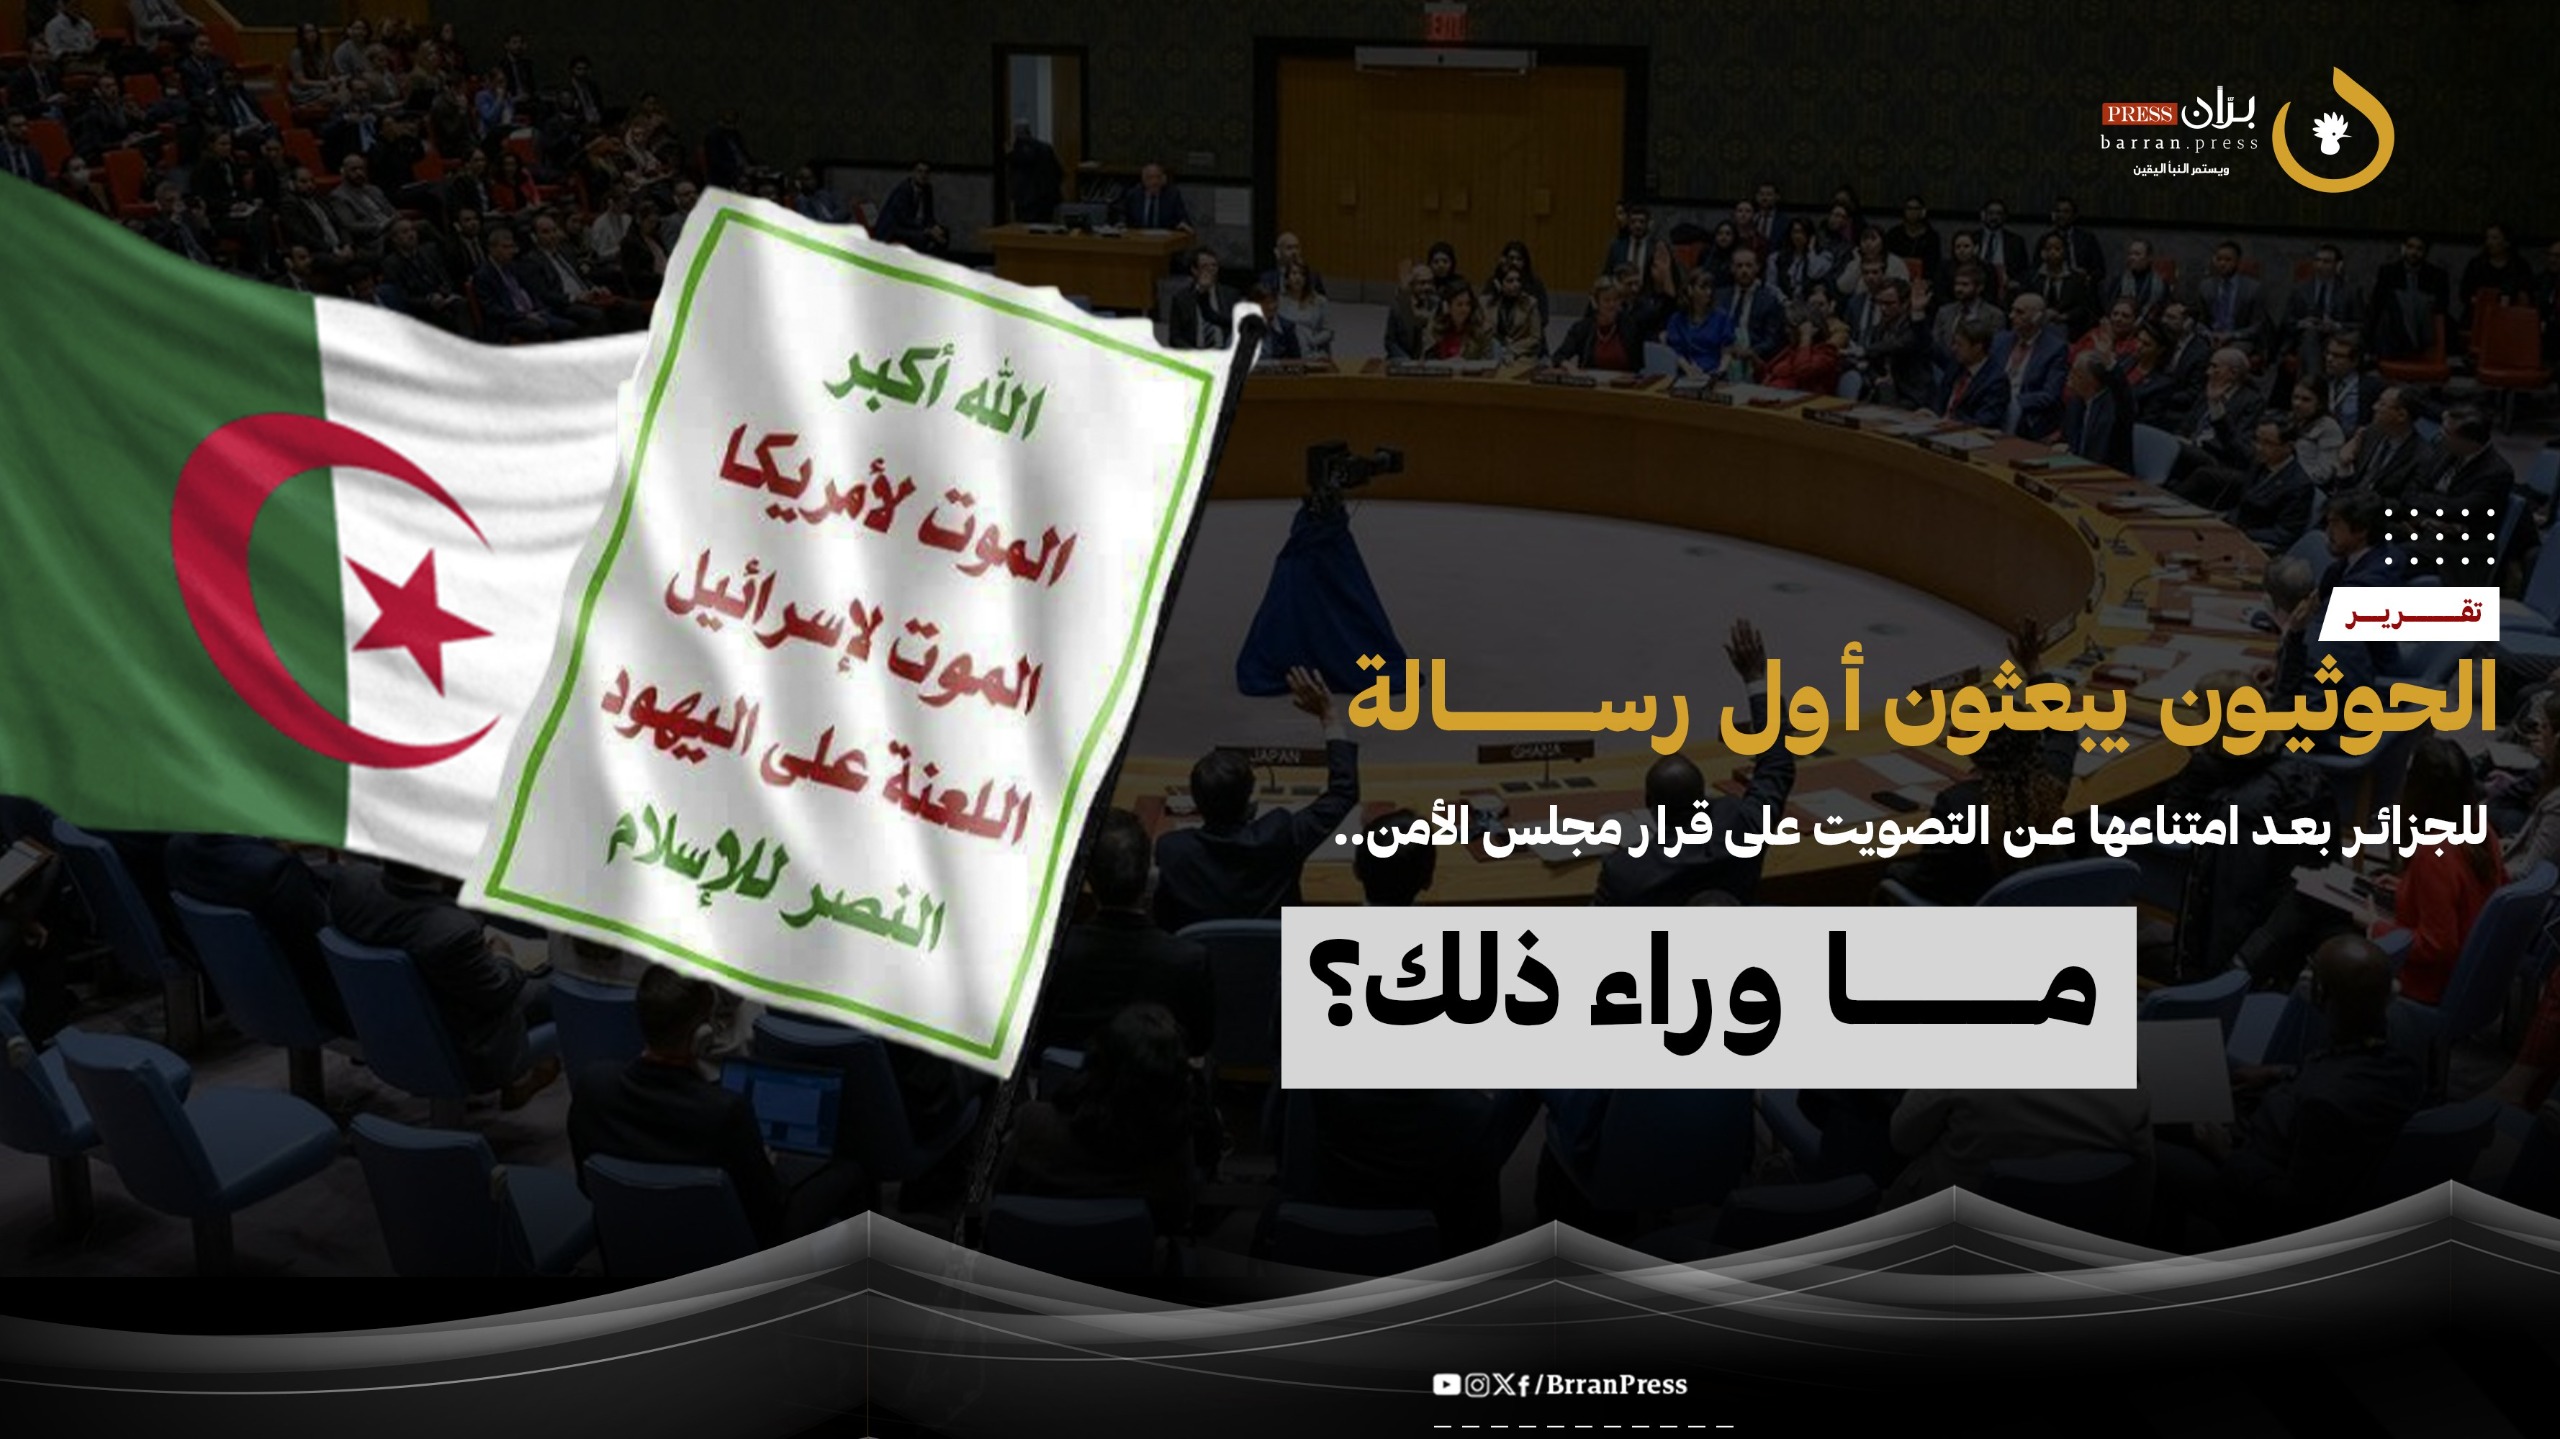 الحوثيون يبعثون أول رسالة للجزائر بعد امتناعها عن التصويت على قرار مجلس الأمن.. ما وراء ذلك؟ (تقرير)